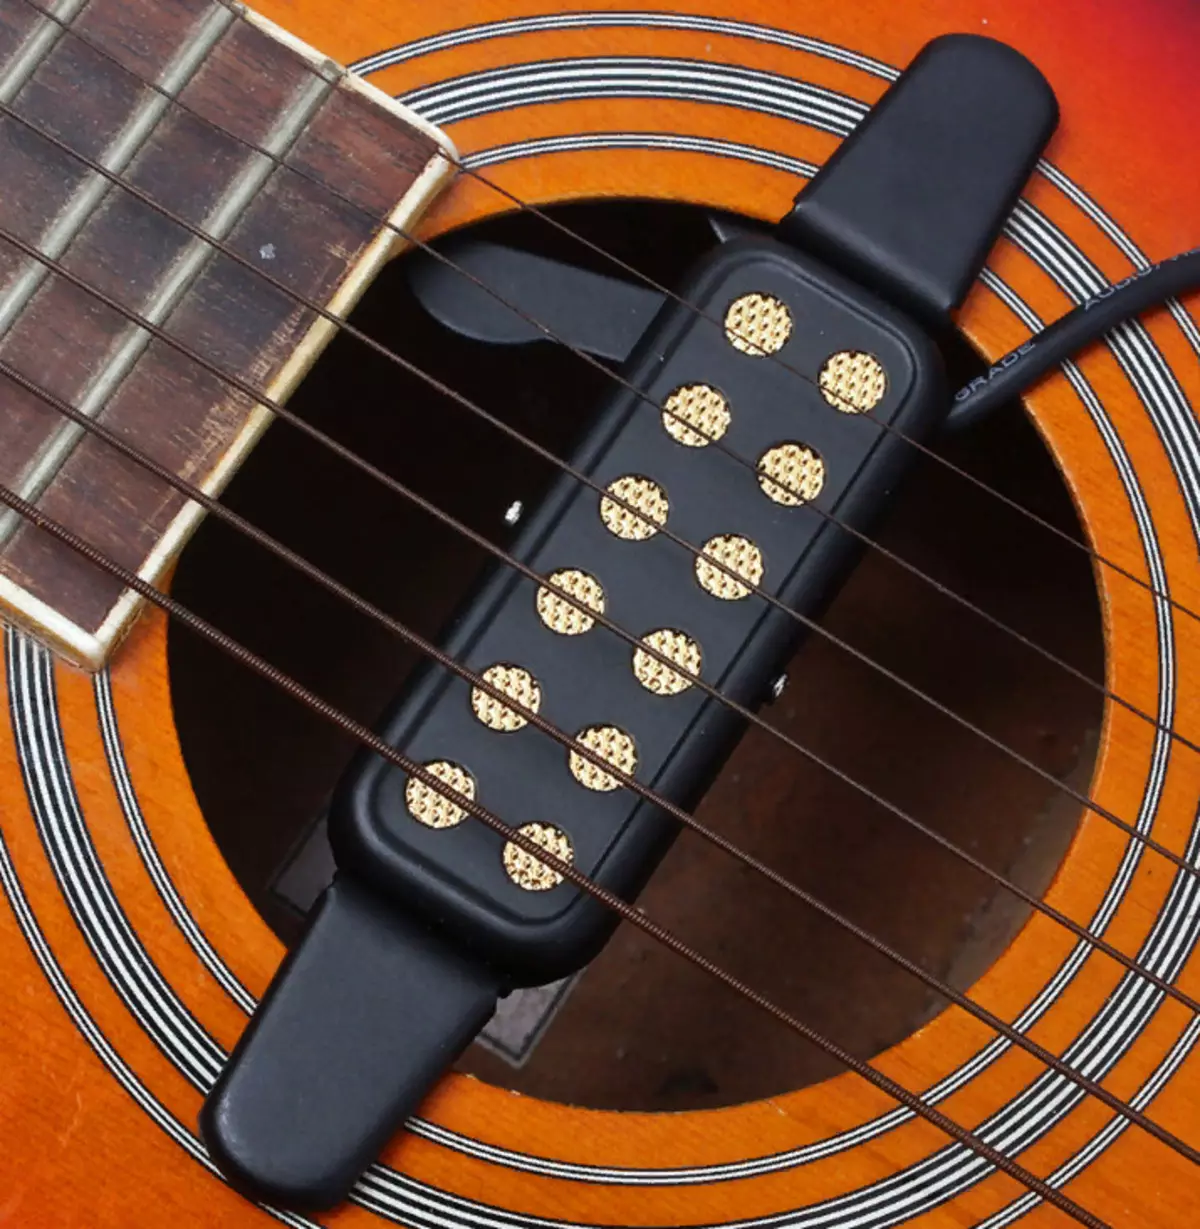 Pickups akustike kitarë: Instalimi, magnetik dhe piezosimer me mikrofon. Çfarë më të mirë për të instaluar? 26265_3